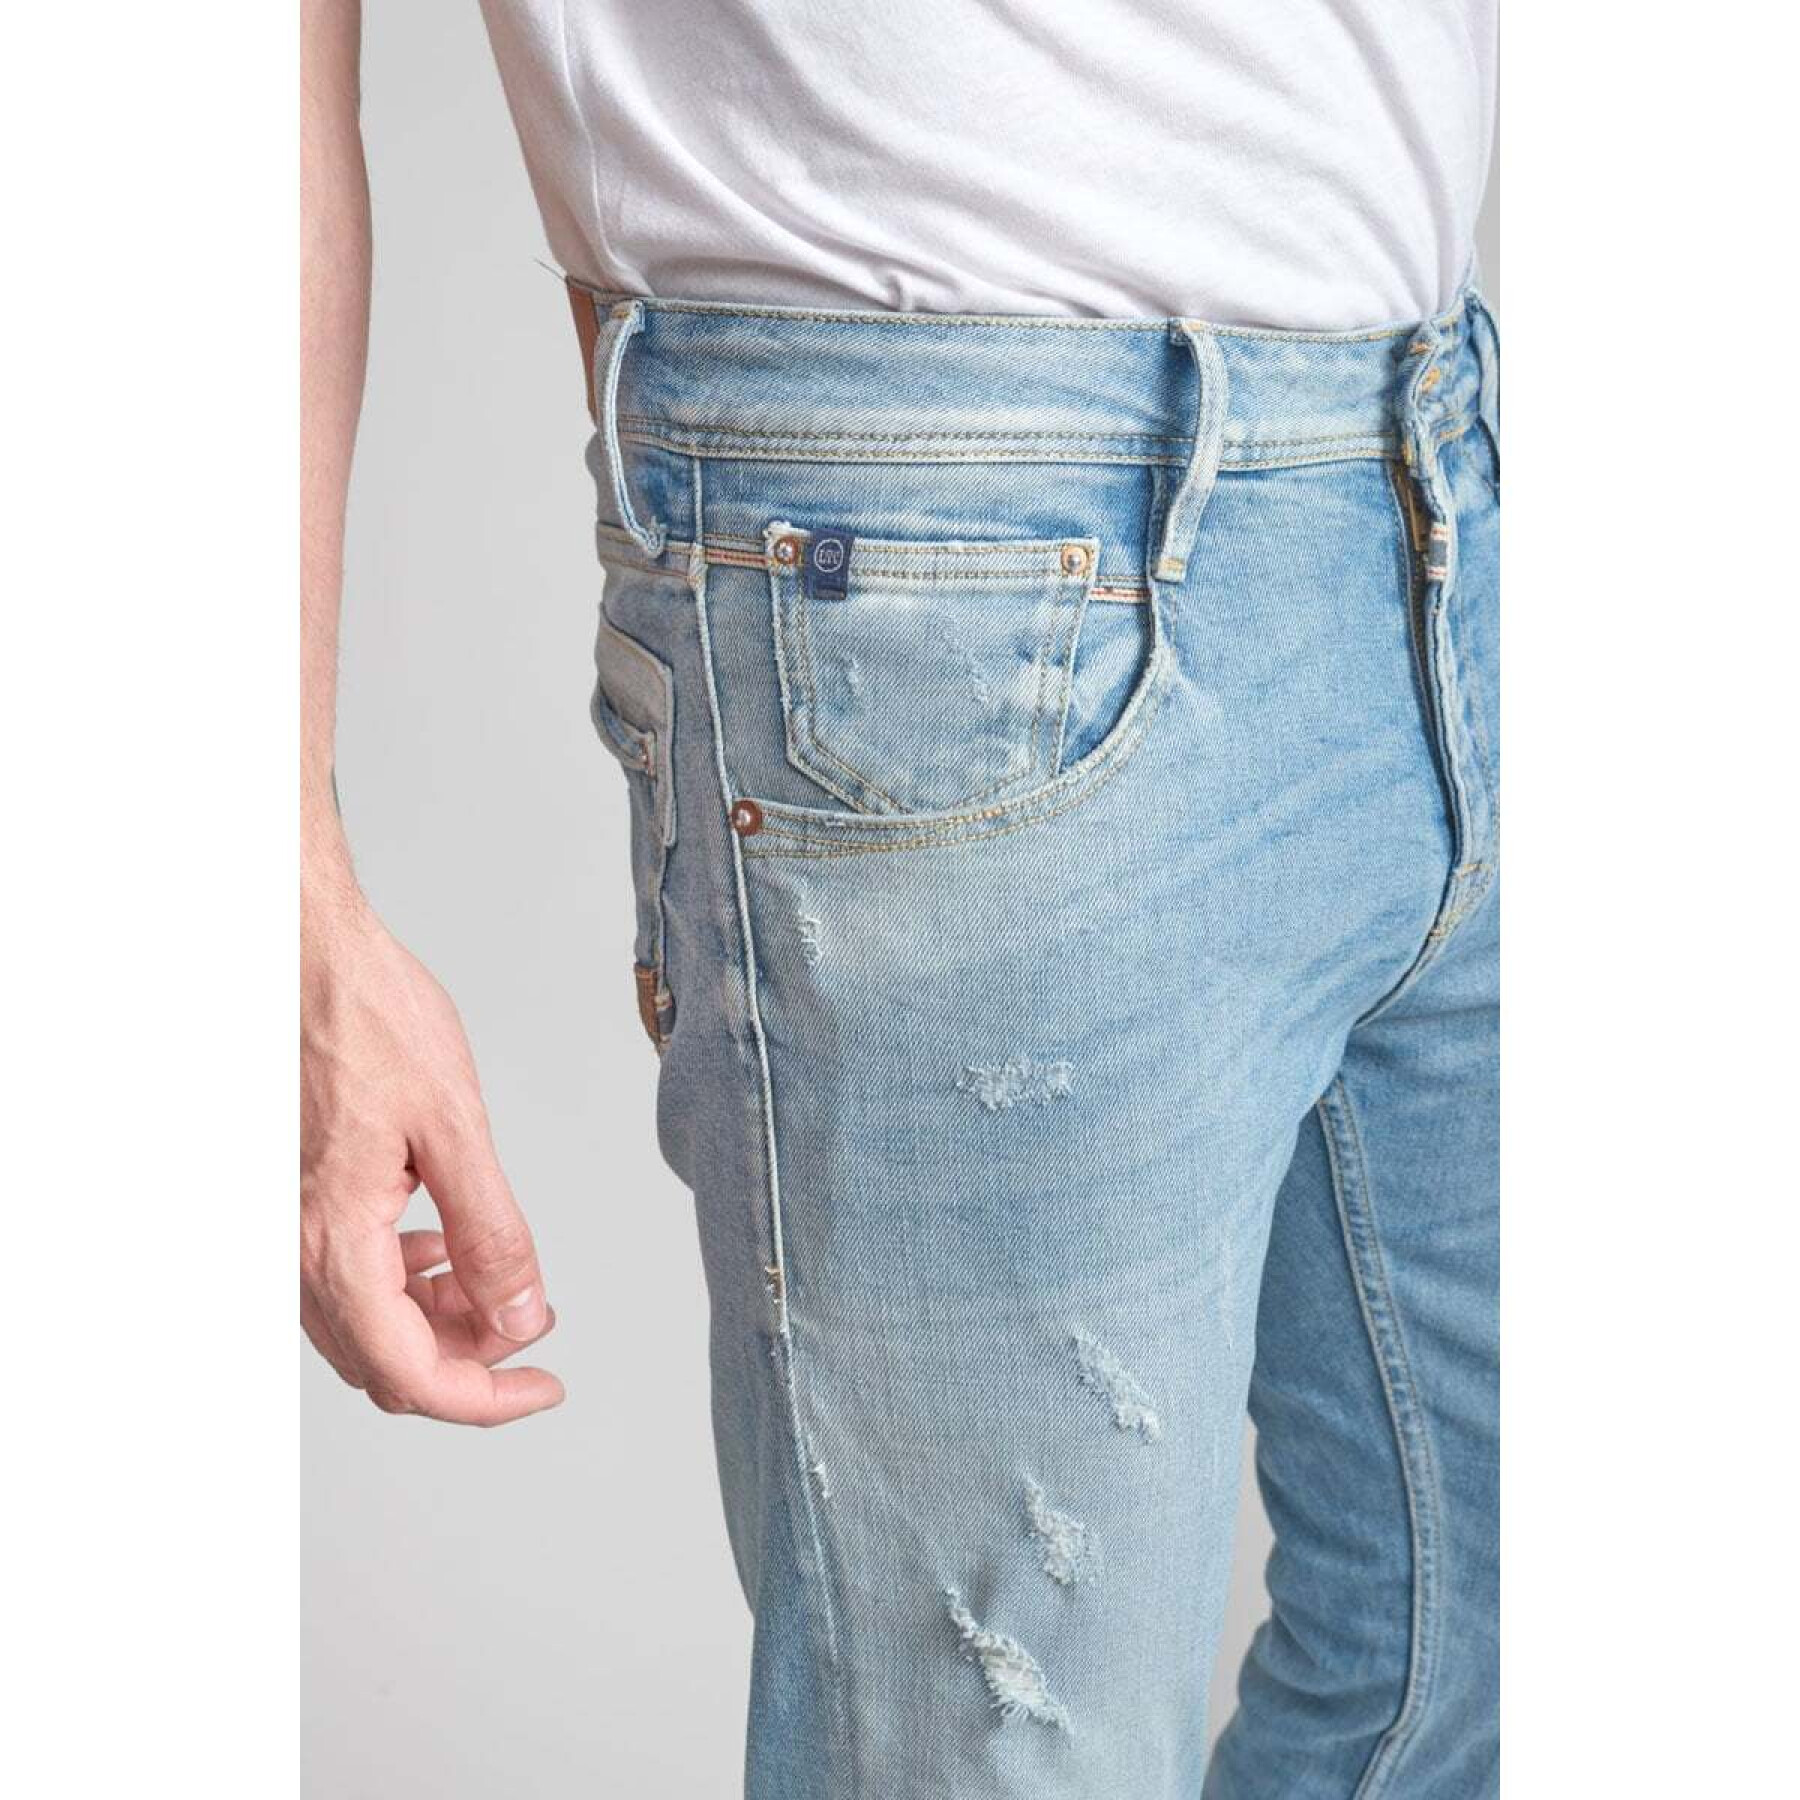 Destroyed jeans Le Temps des cerises Loos 700/11 N°5